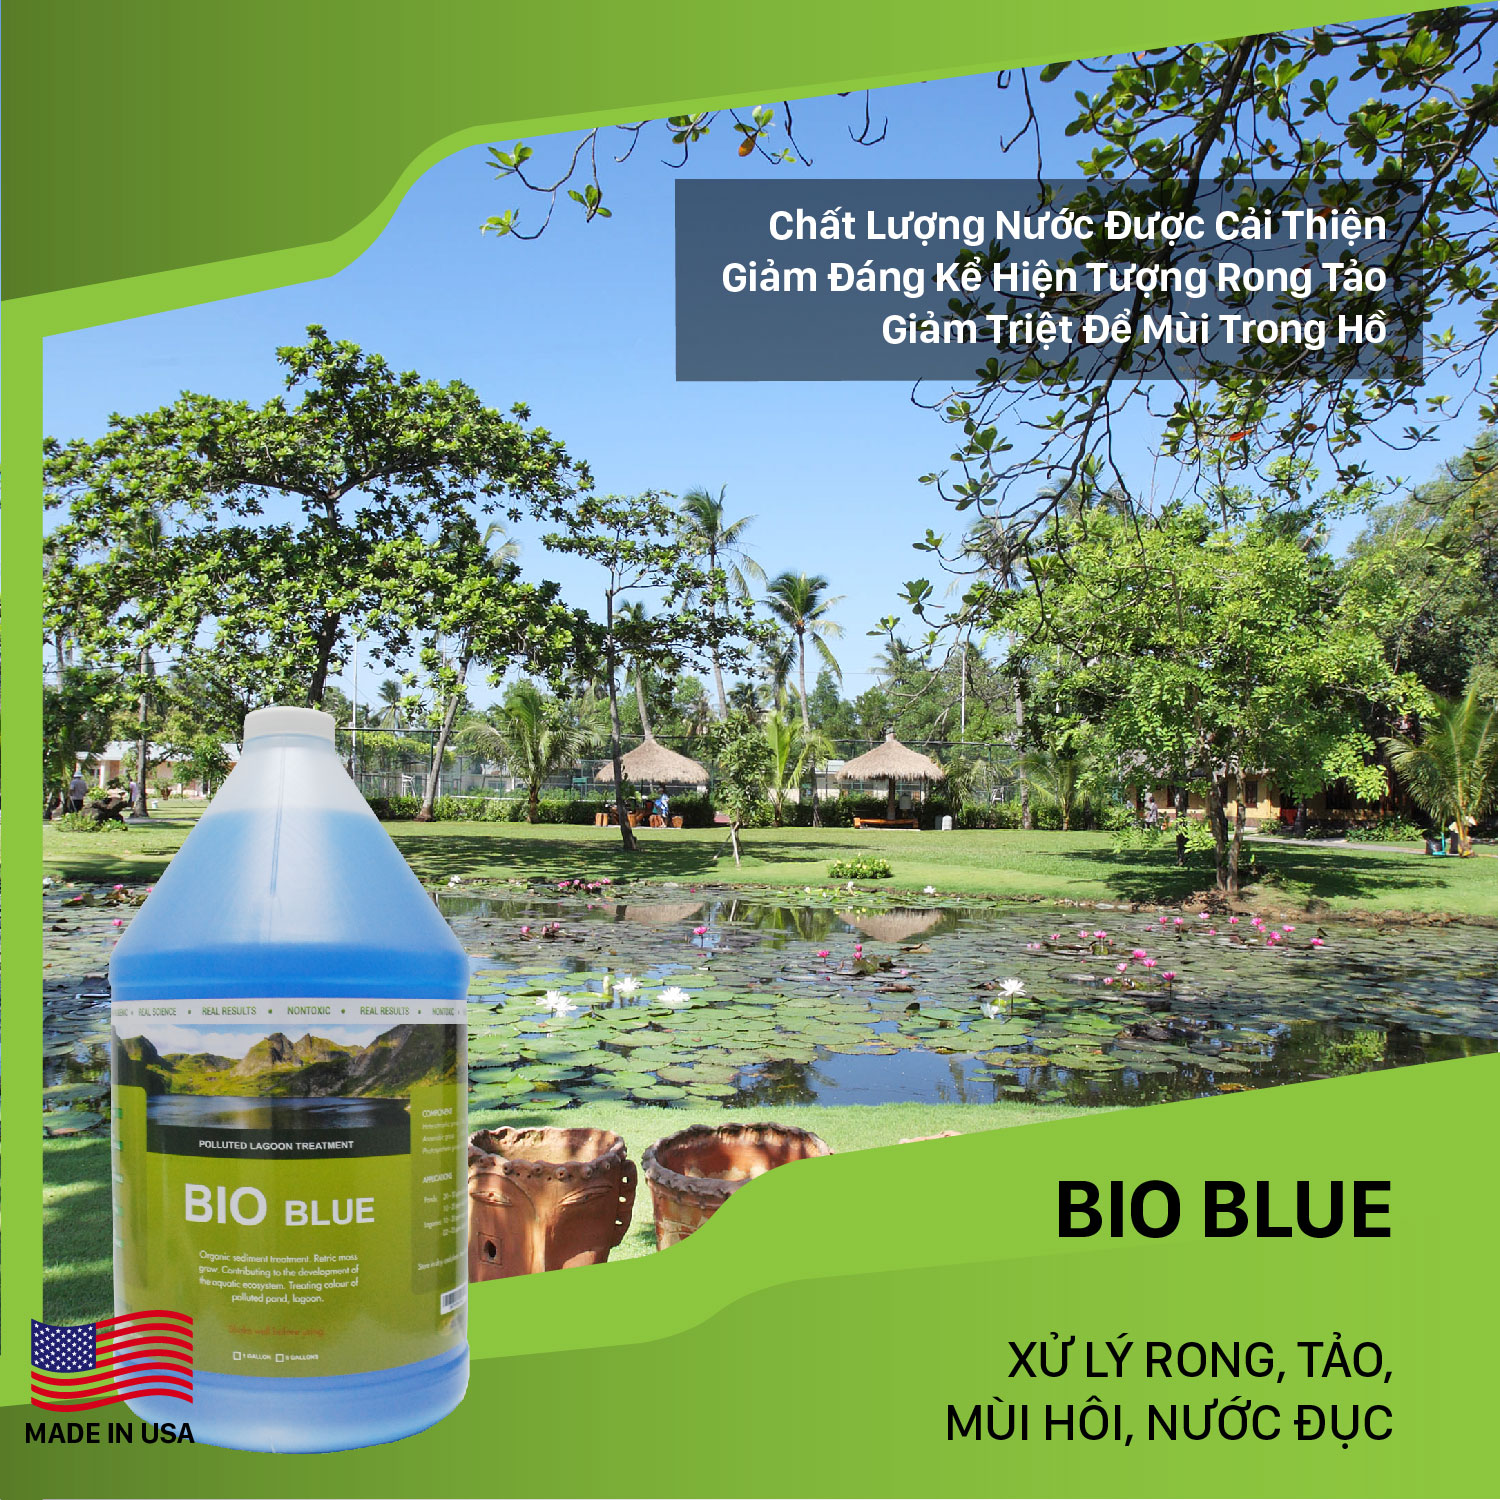 Bio Blue Vi sinh xử lý ao hồ bị ô nhiễm